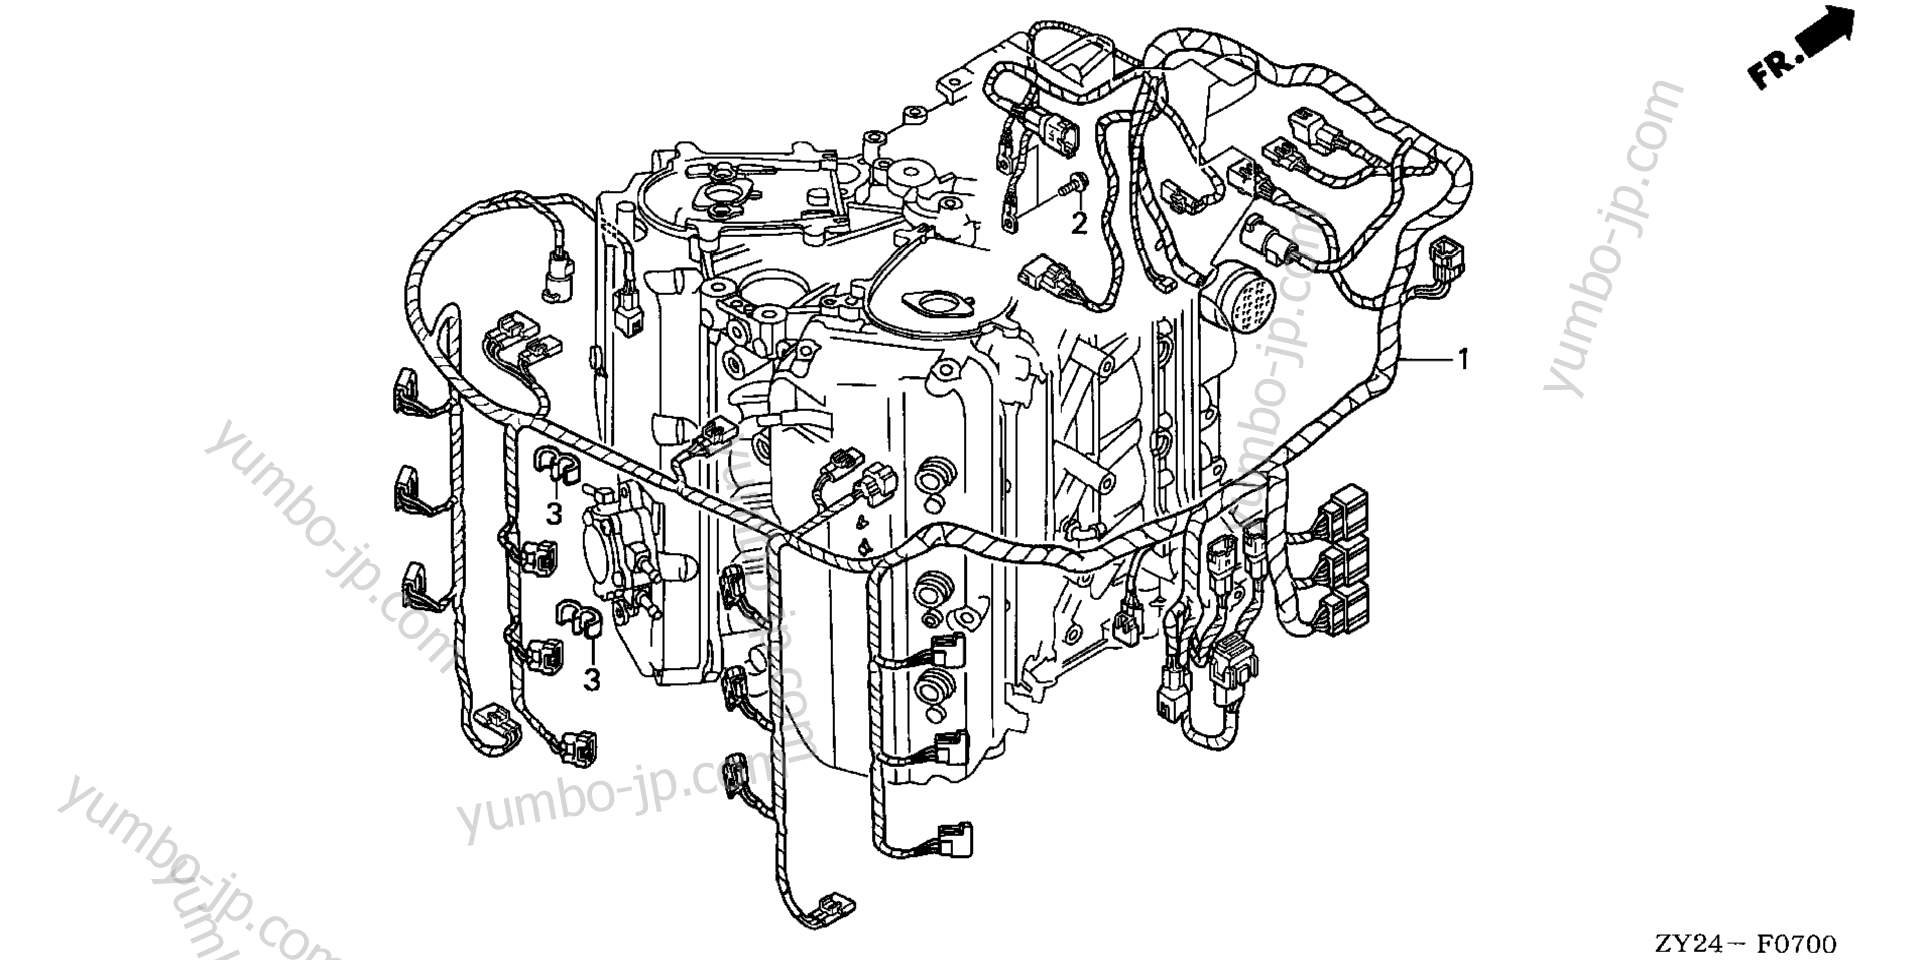 Проводка для стационарных двигателей HONDA BF225A5 XXCA 